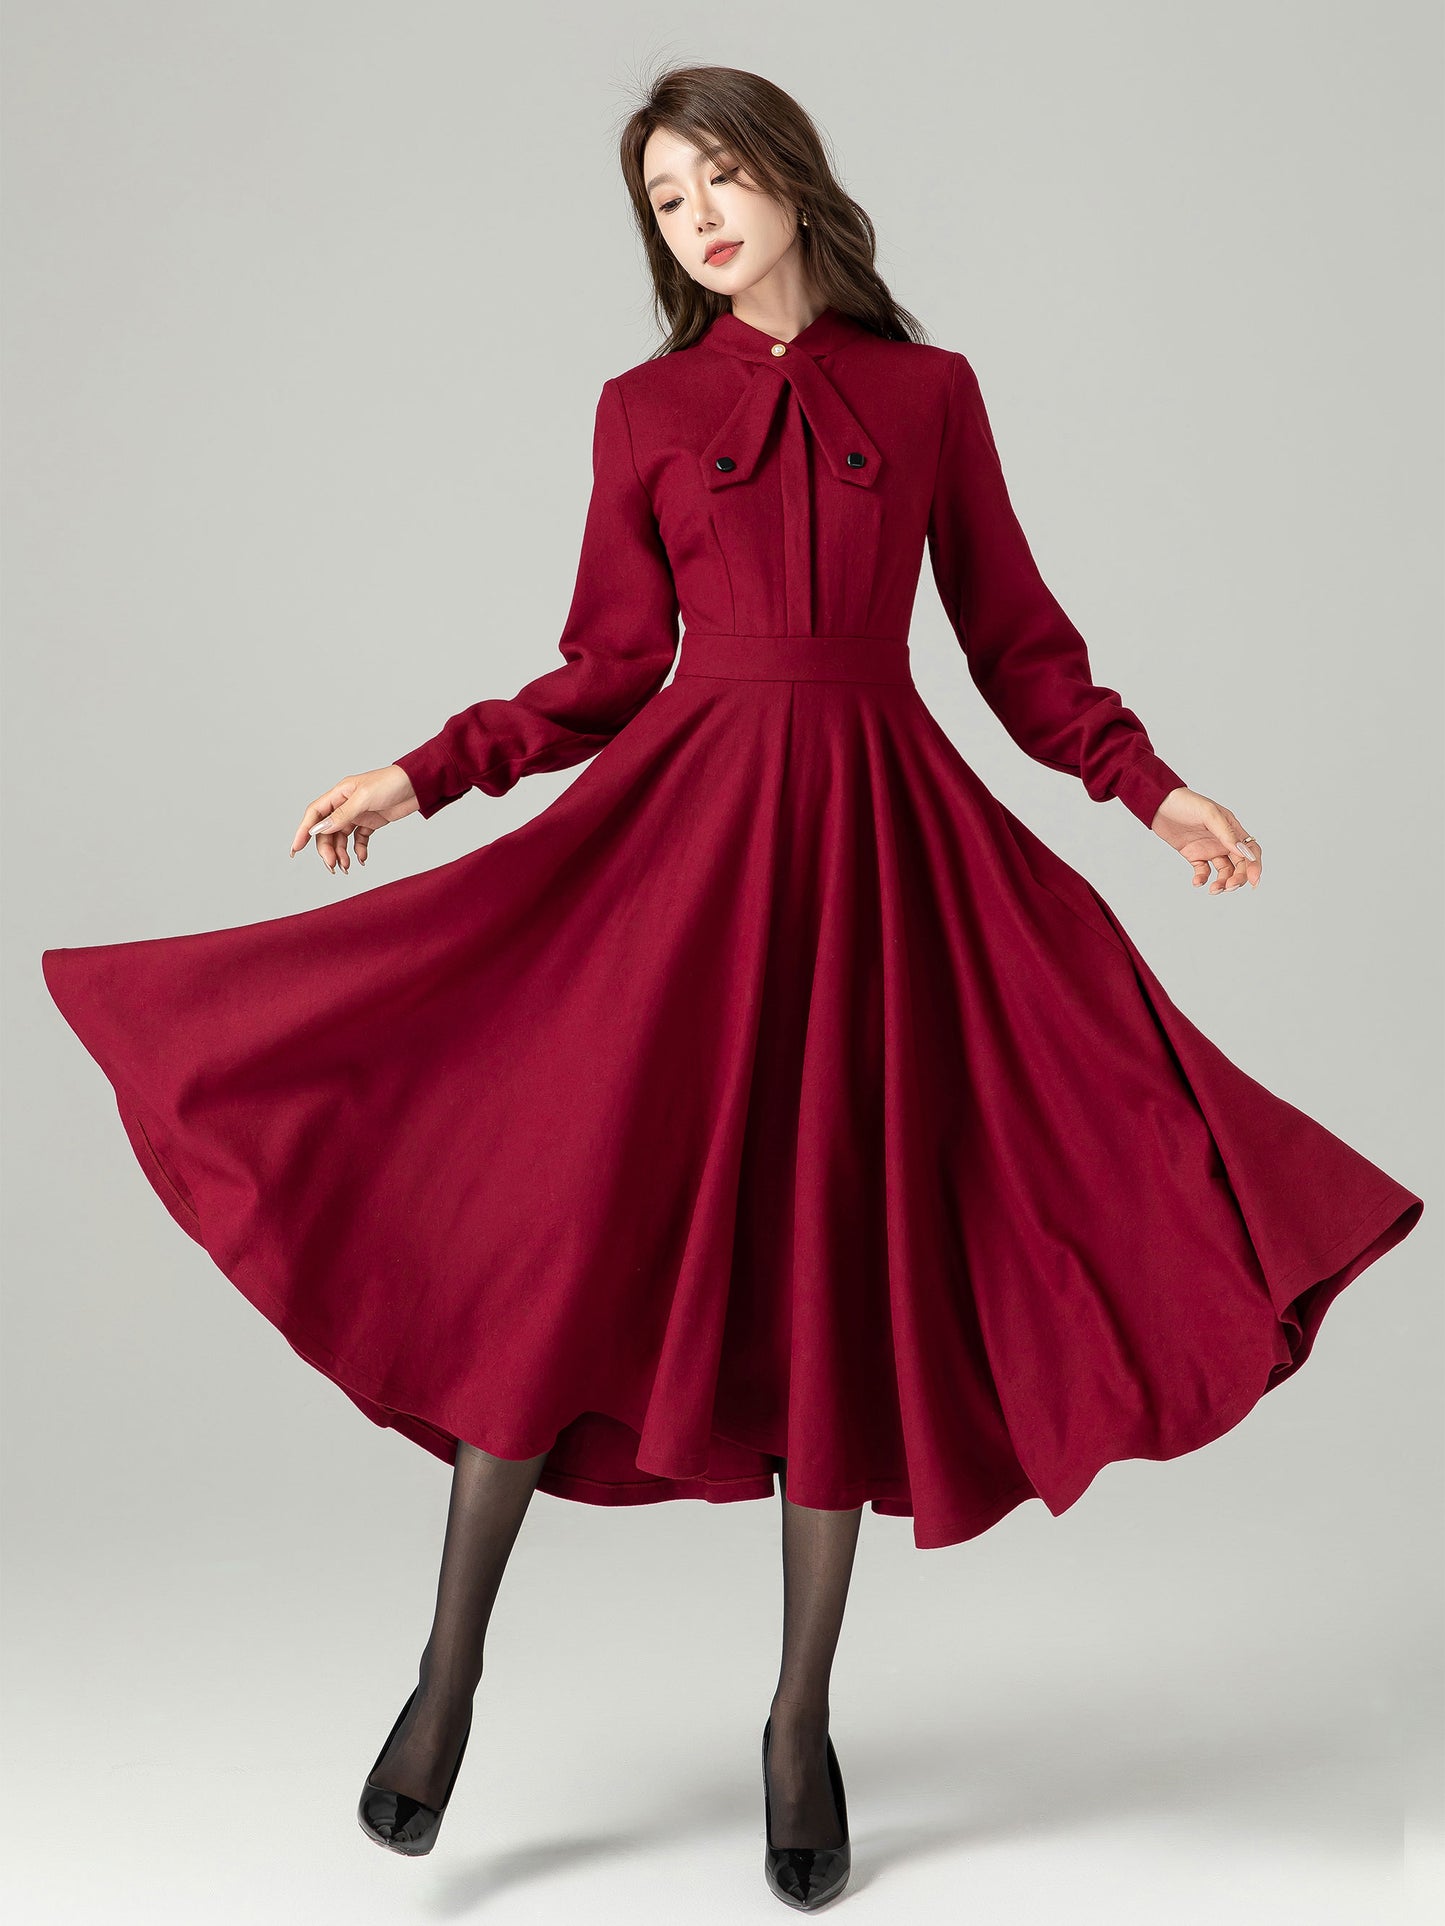 Burgundy Wool Dress, Vintage Inspired Wool Dress 4490